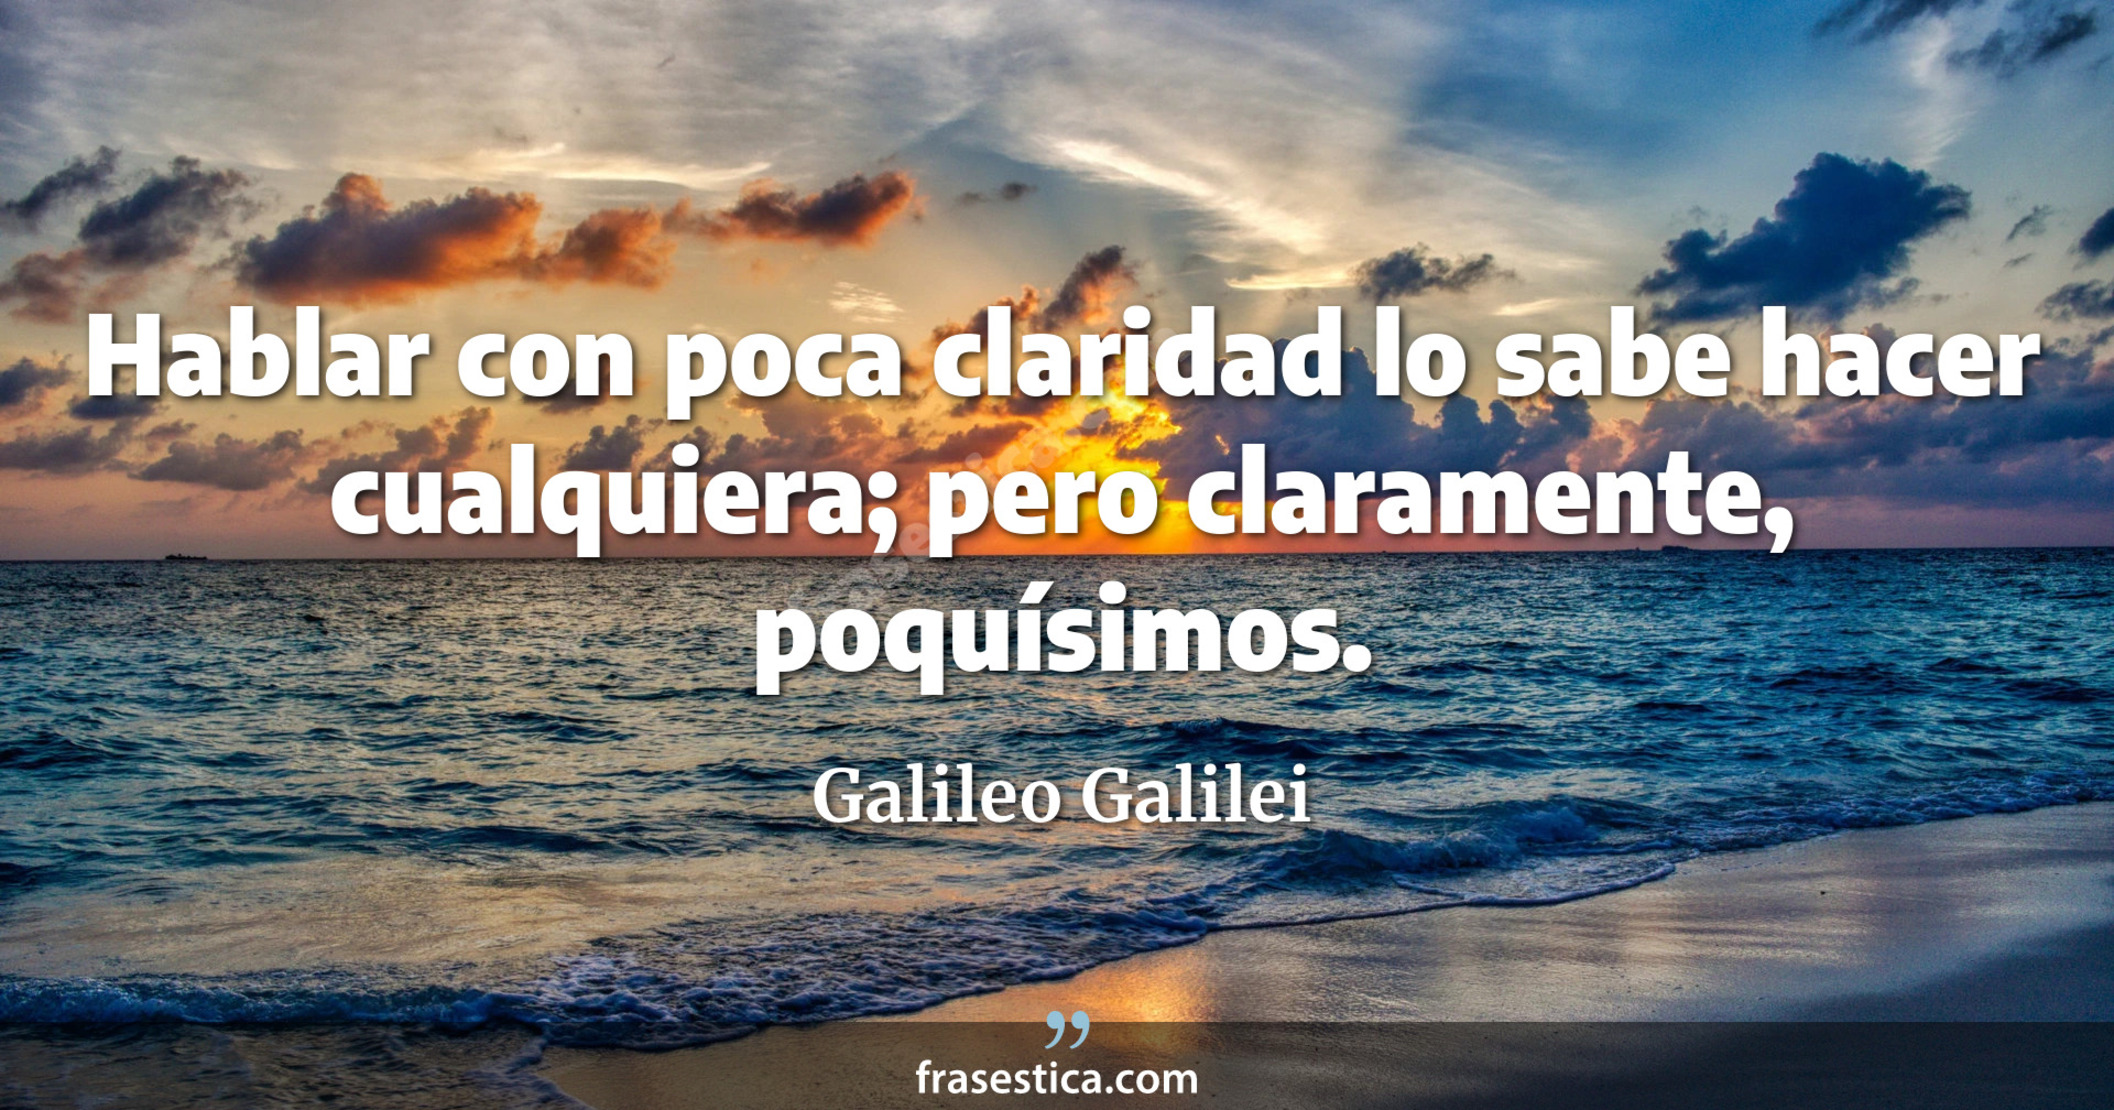 Hablar con poca claridad lo sabe hacer cualquiera; pero claramente, poquísimos. - Galileo Galilei